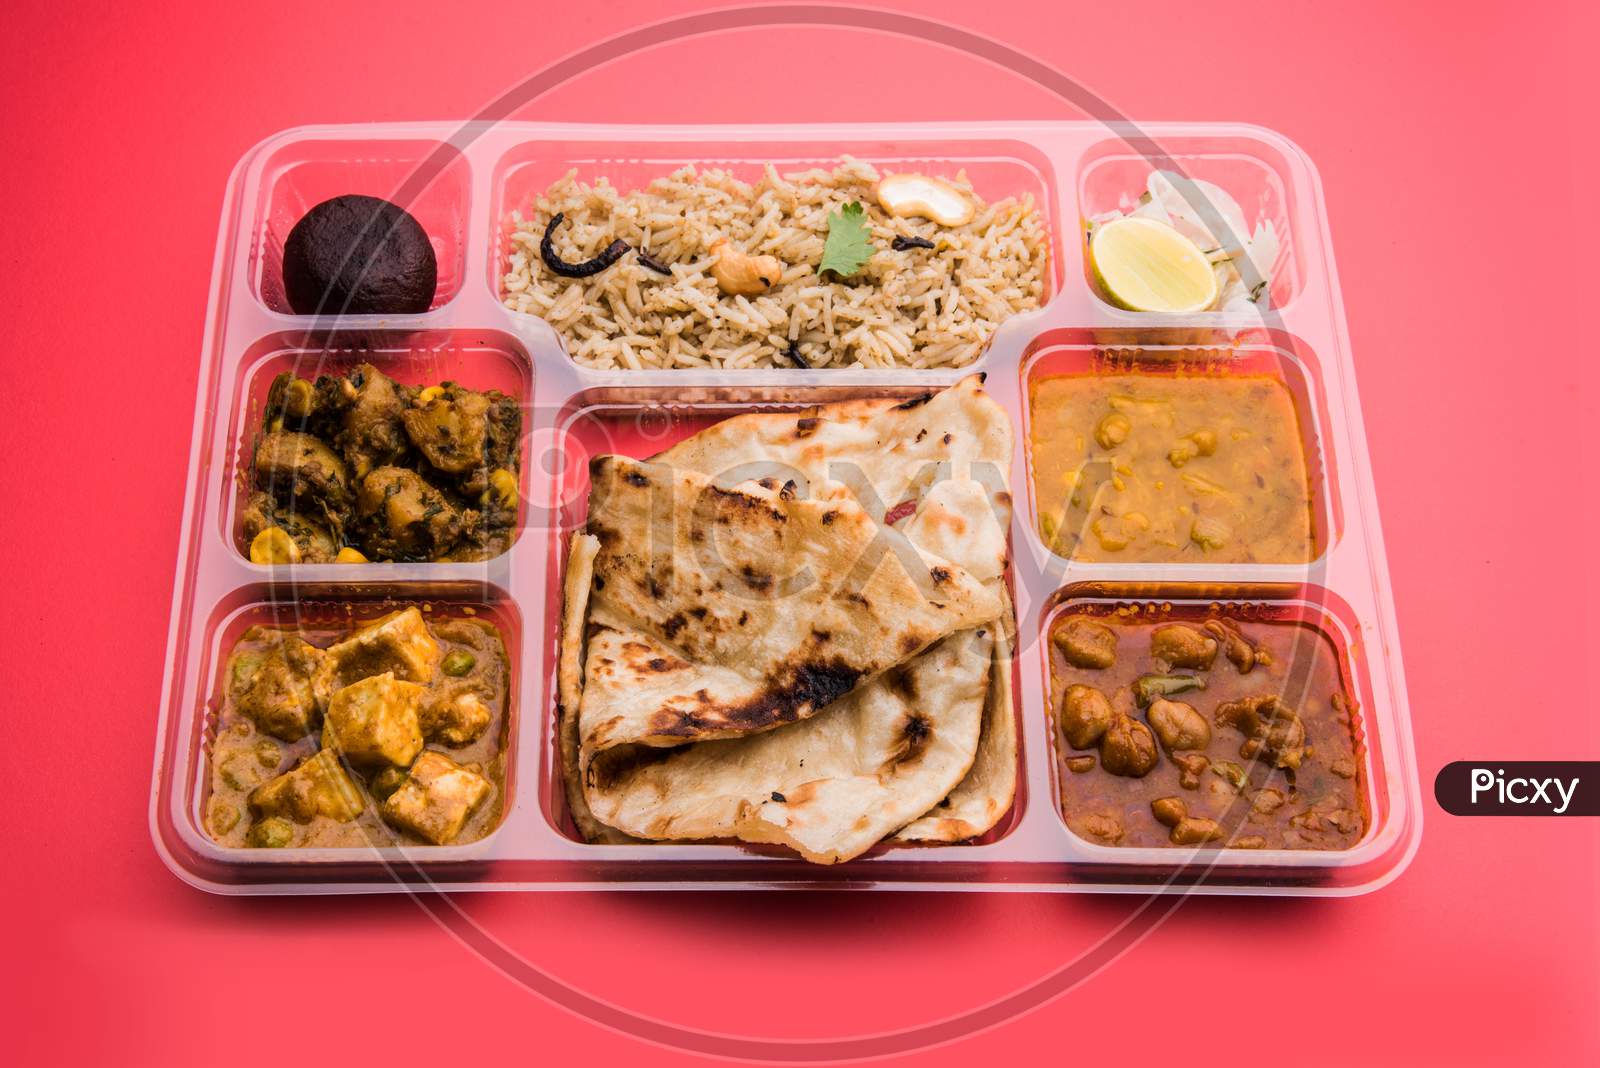 Indian vegetarian thali or food platter for parcel